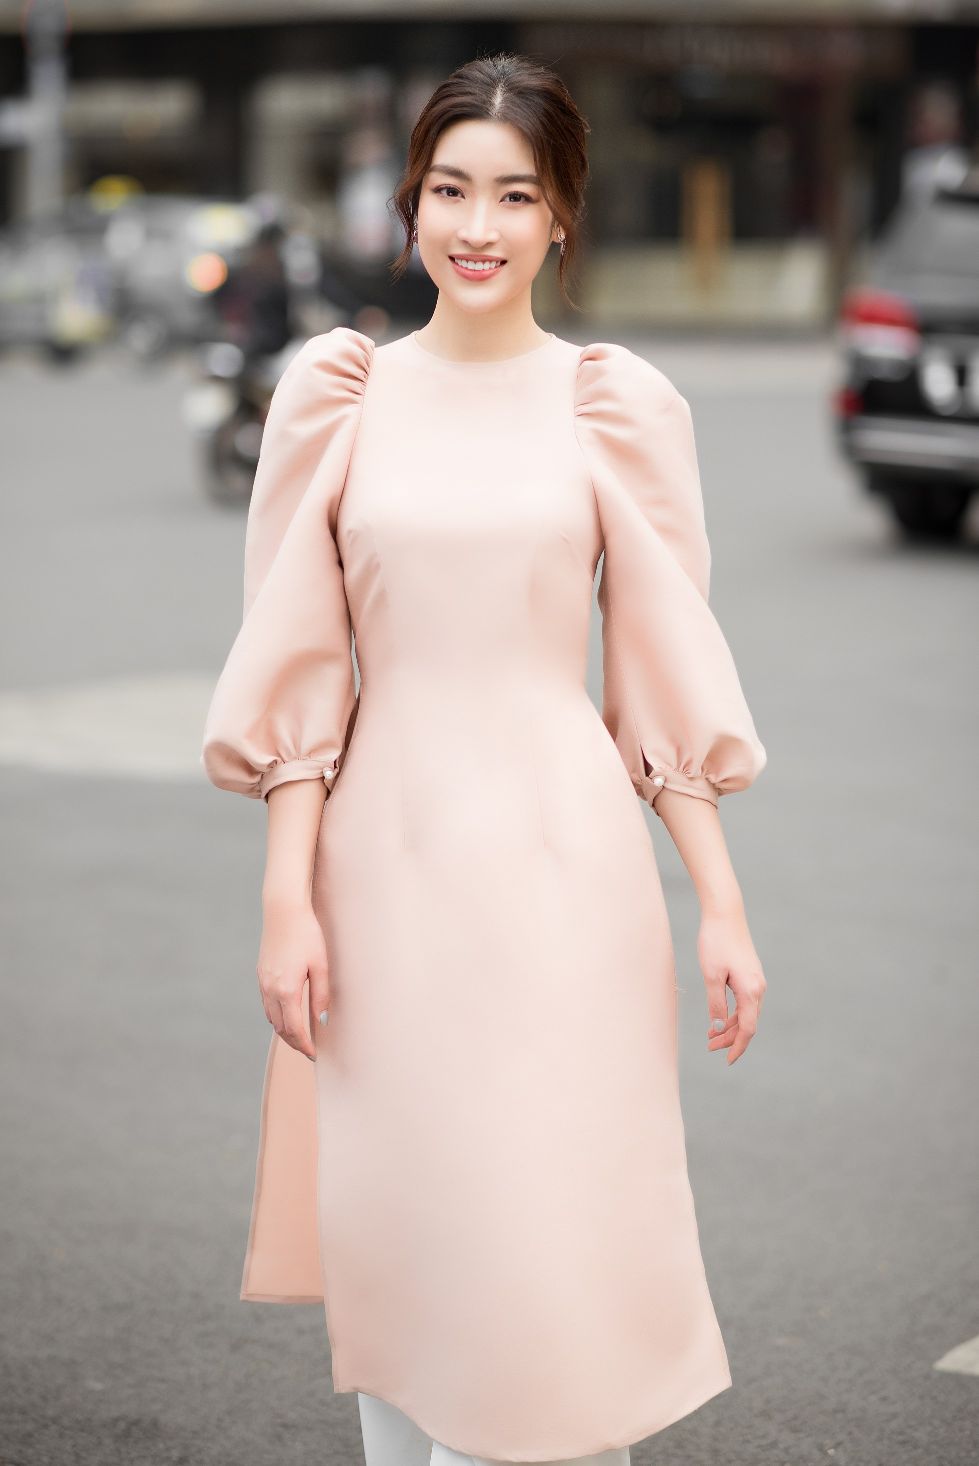 HOA HAU DO MY LINH 1 Hoa hậu Đỗ Mỹ Linh thử sức kinh doanh thời trang, rủ rê Tiểu Vy làm mẫu ruột